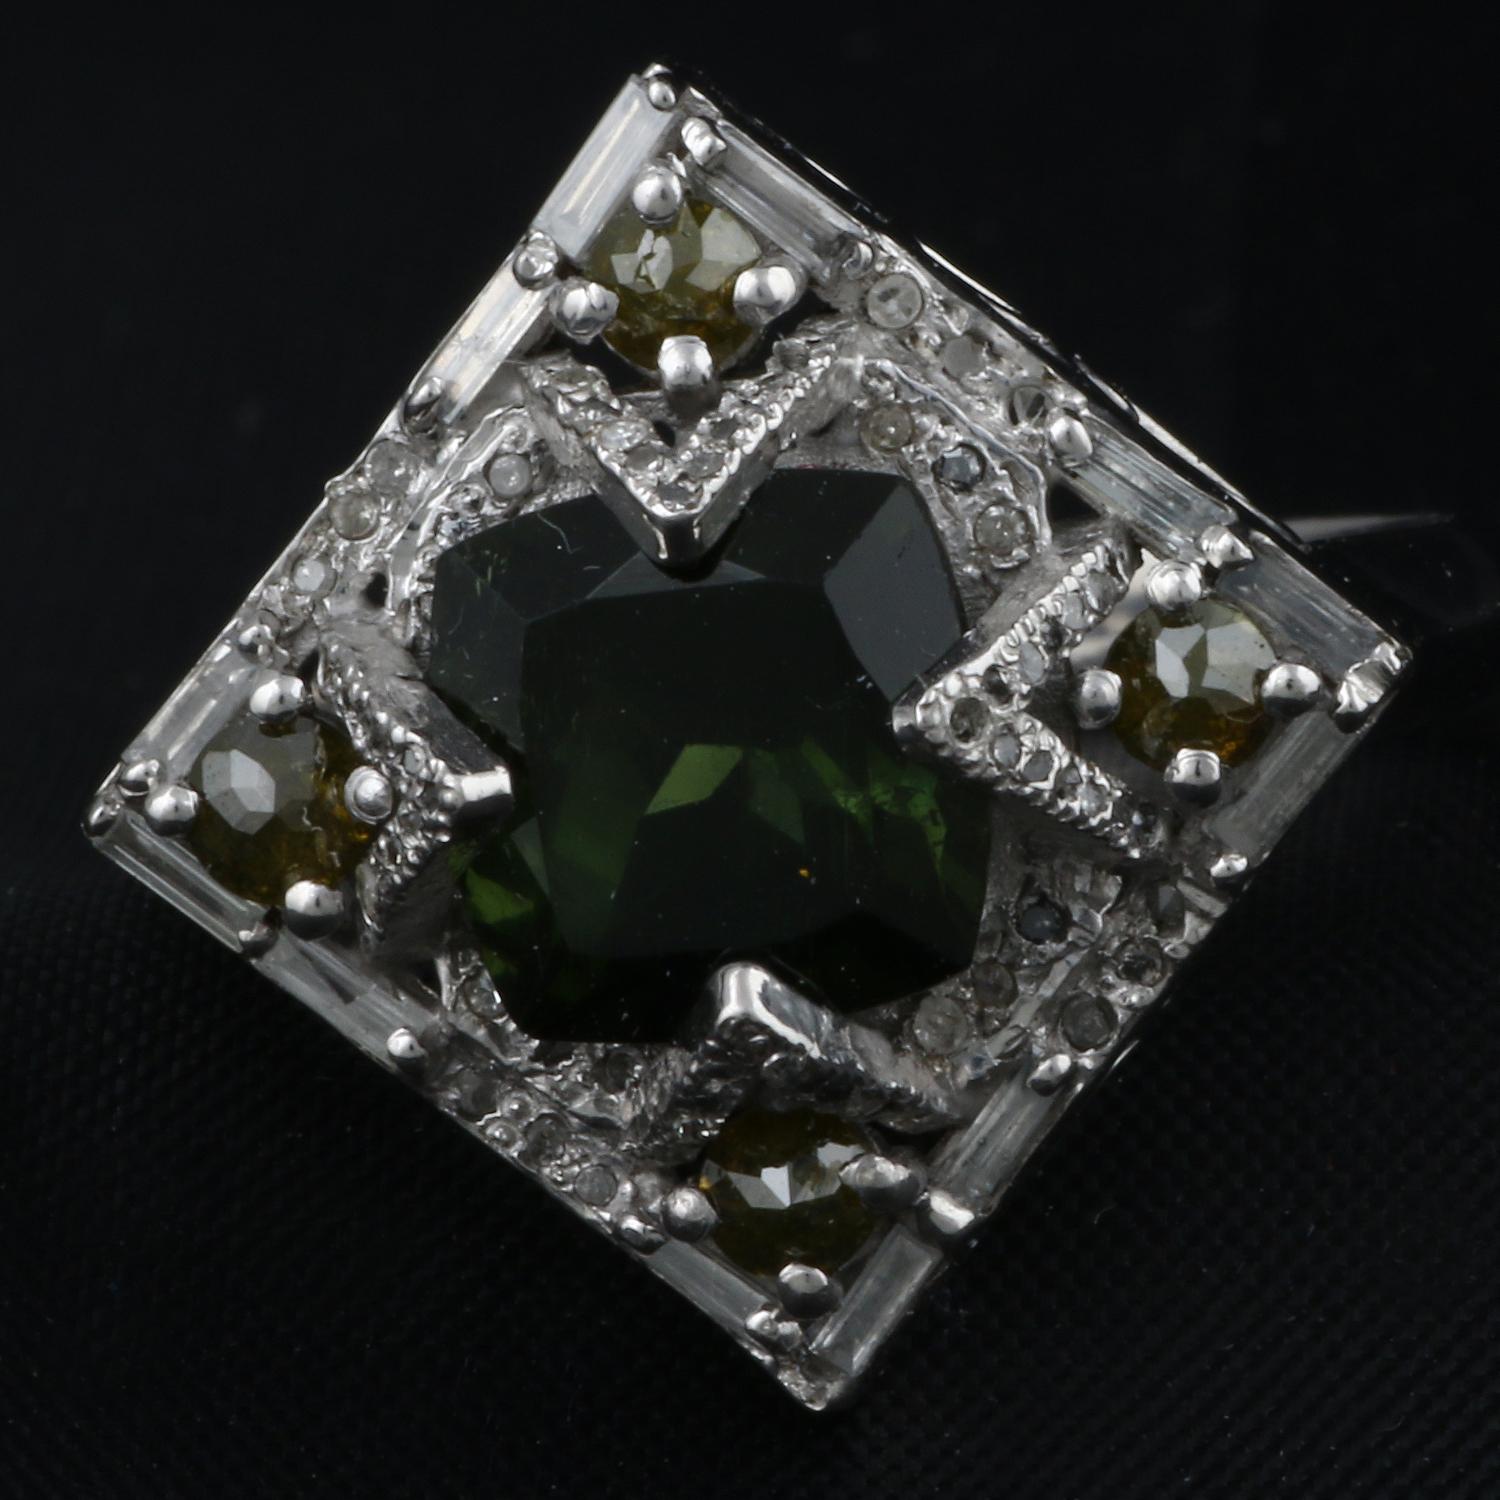 Détails de l'article:-

✦ SKU:- ESRG00143

✦ Material :- Silver
✦ Gemstone Specification:-
✧ Diamant
✧ Péridot vert

✦ Approx. Poids du diamant : 0,6
✦ Approx. Argent Poids : 3.7
✦ Approx. Poids brut : 4.31

Taille de la bague (US) : 7.5

Vous